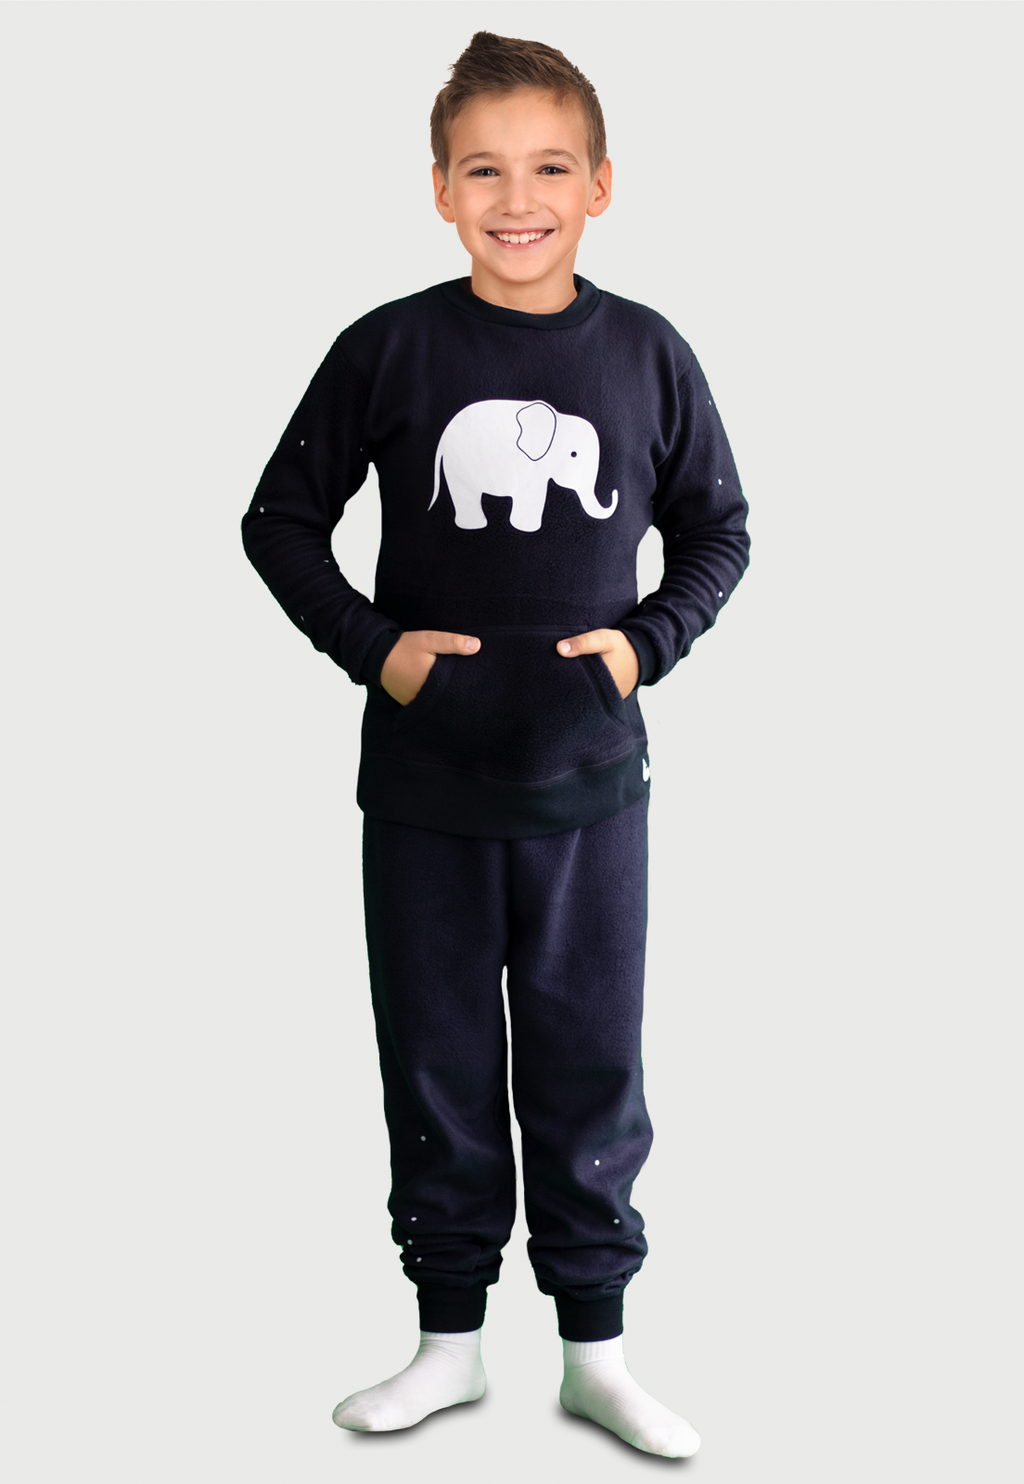 Niño luciendo una pijama azul térmica estampada con un elefante blanco